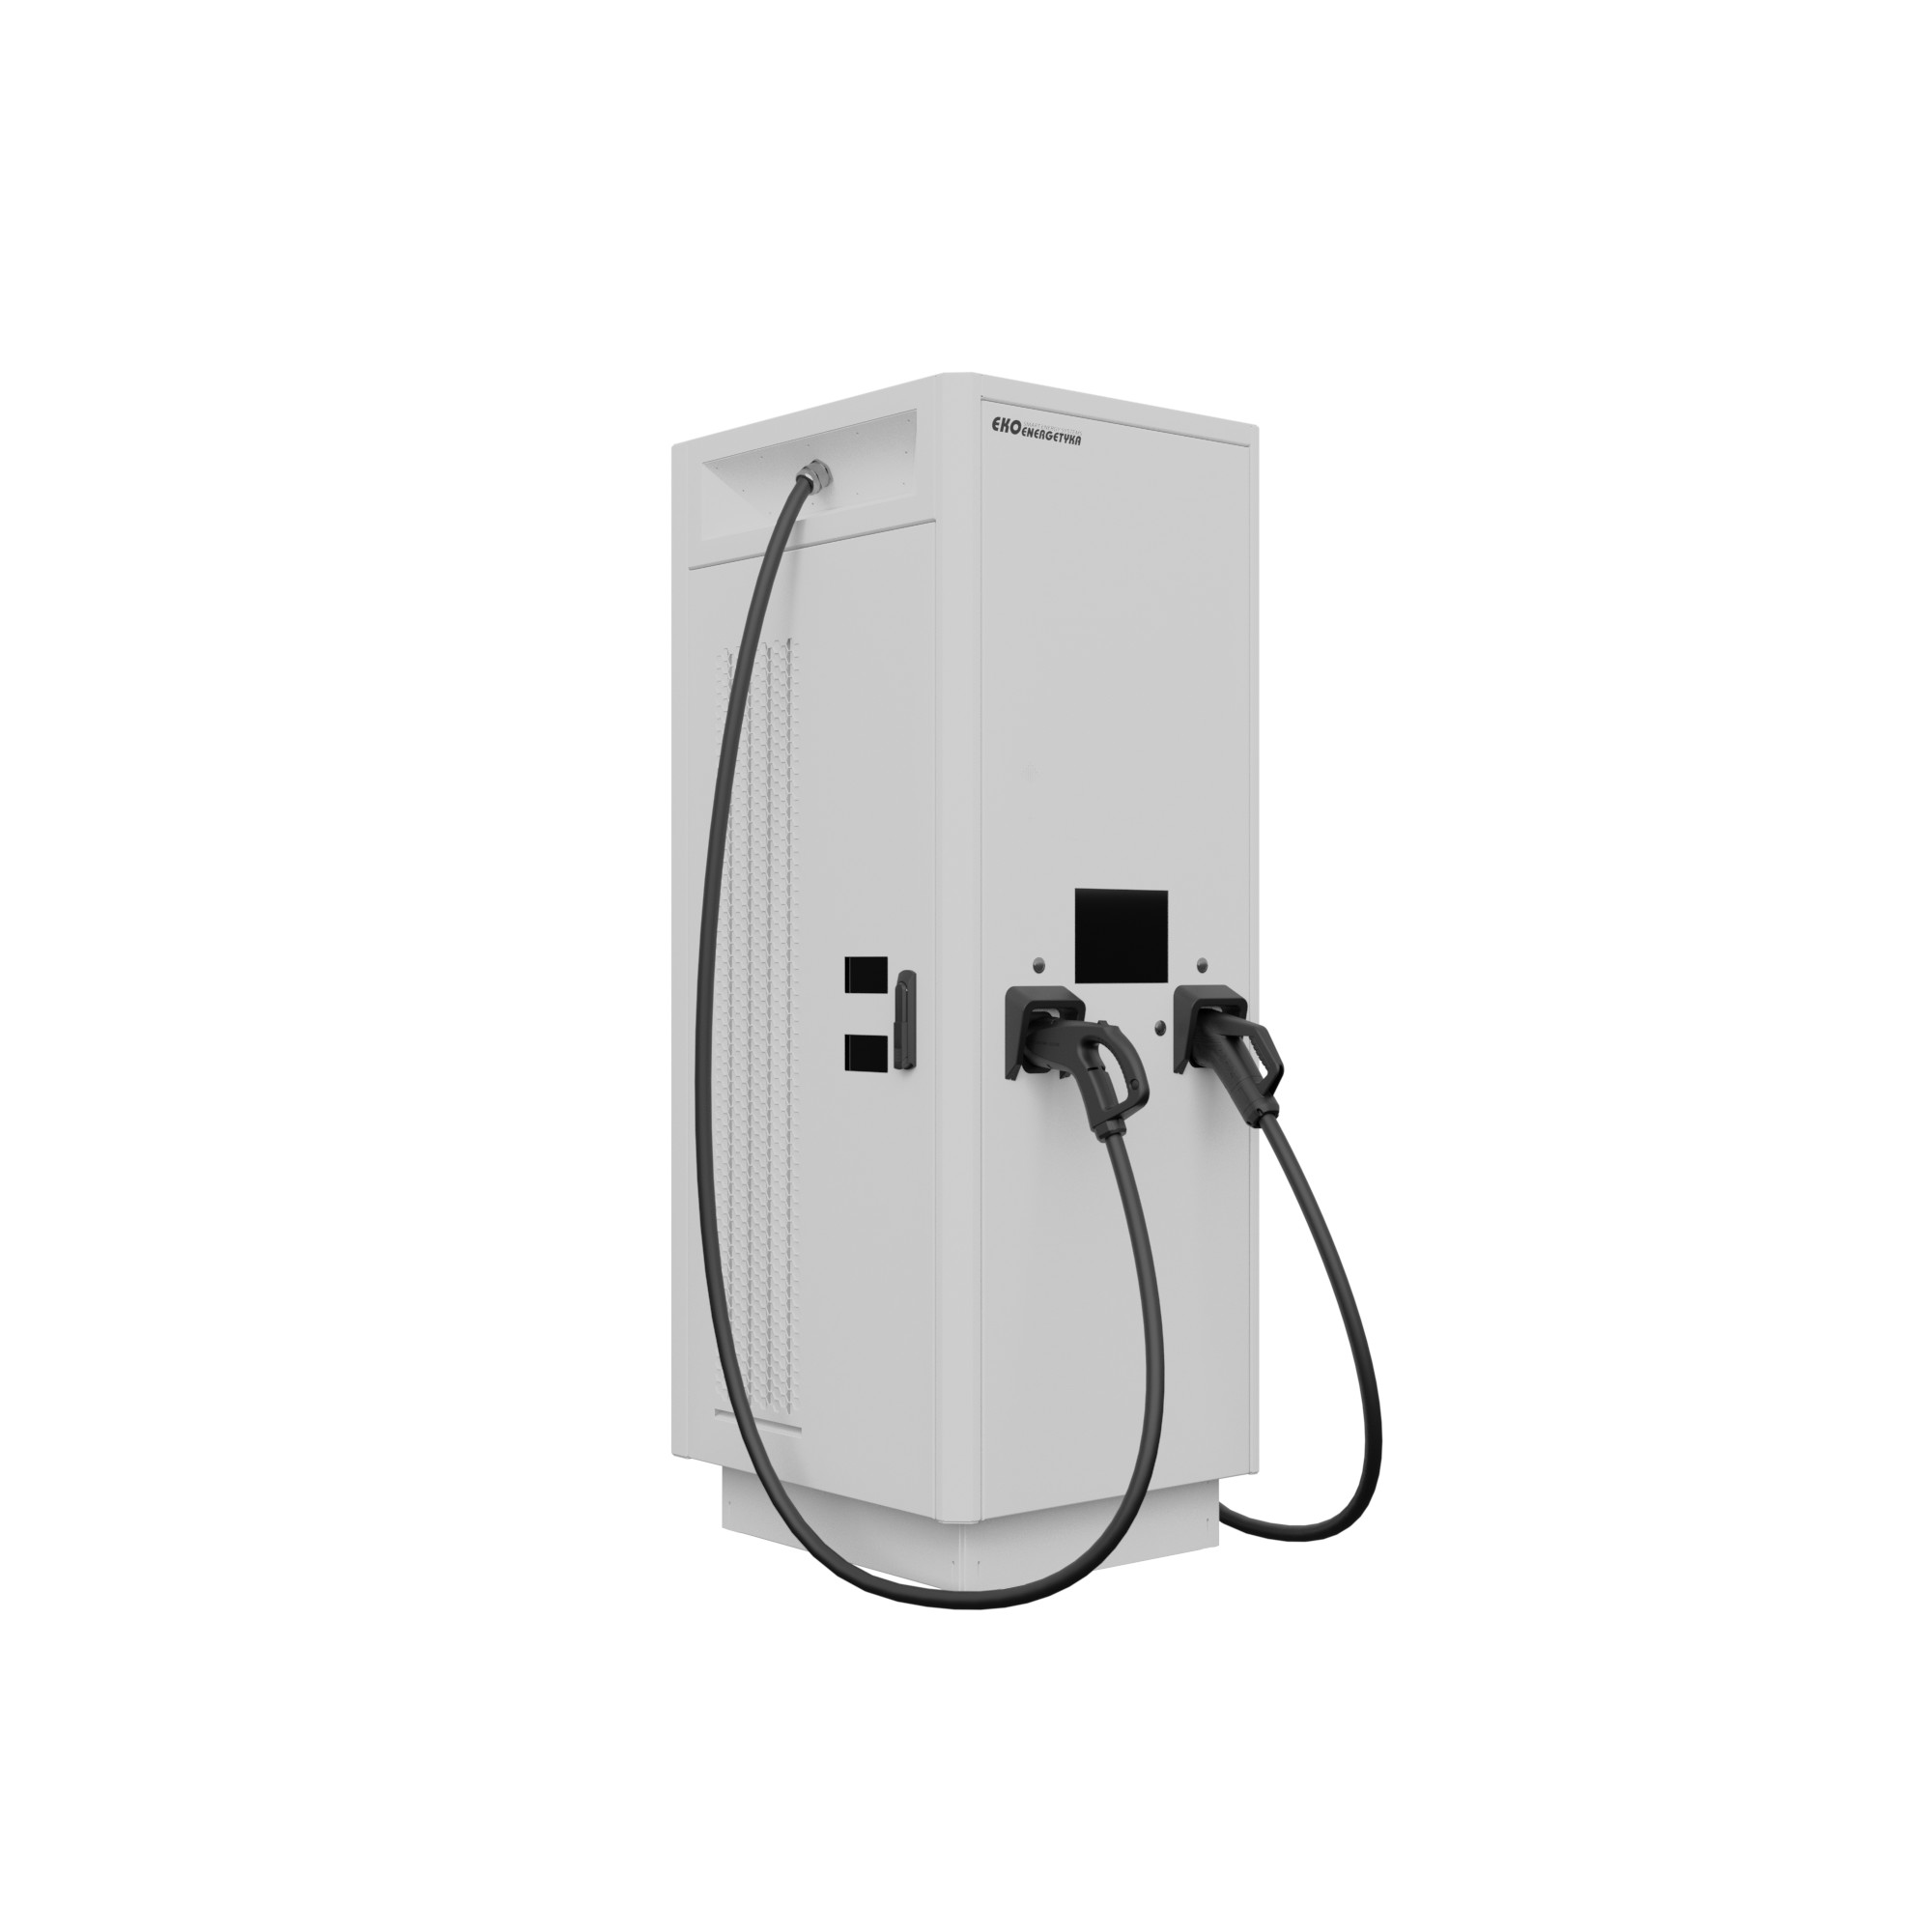 Axon Easy 60 120 180 - charging station | Ekoenergetyka